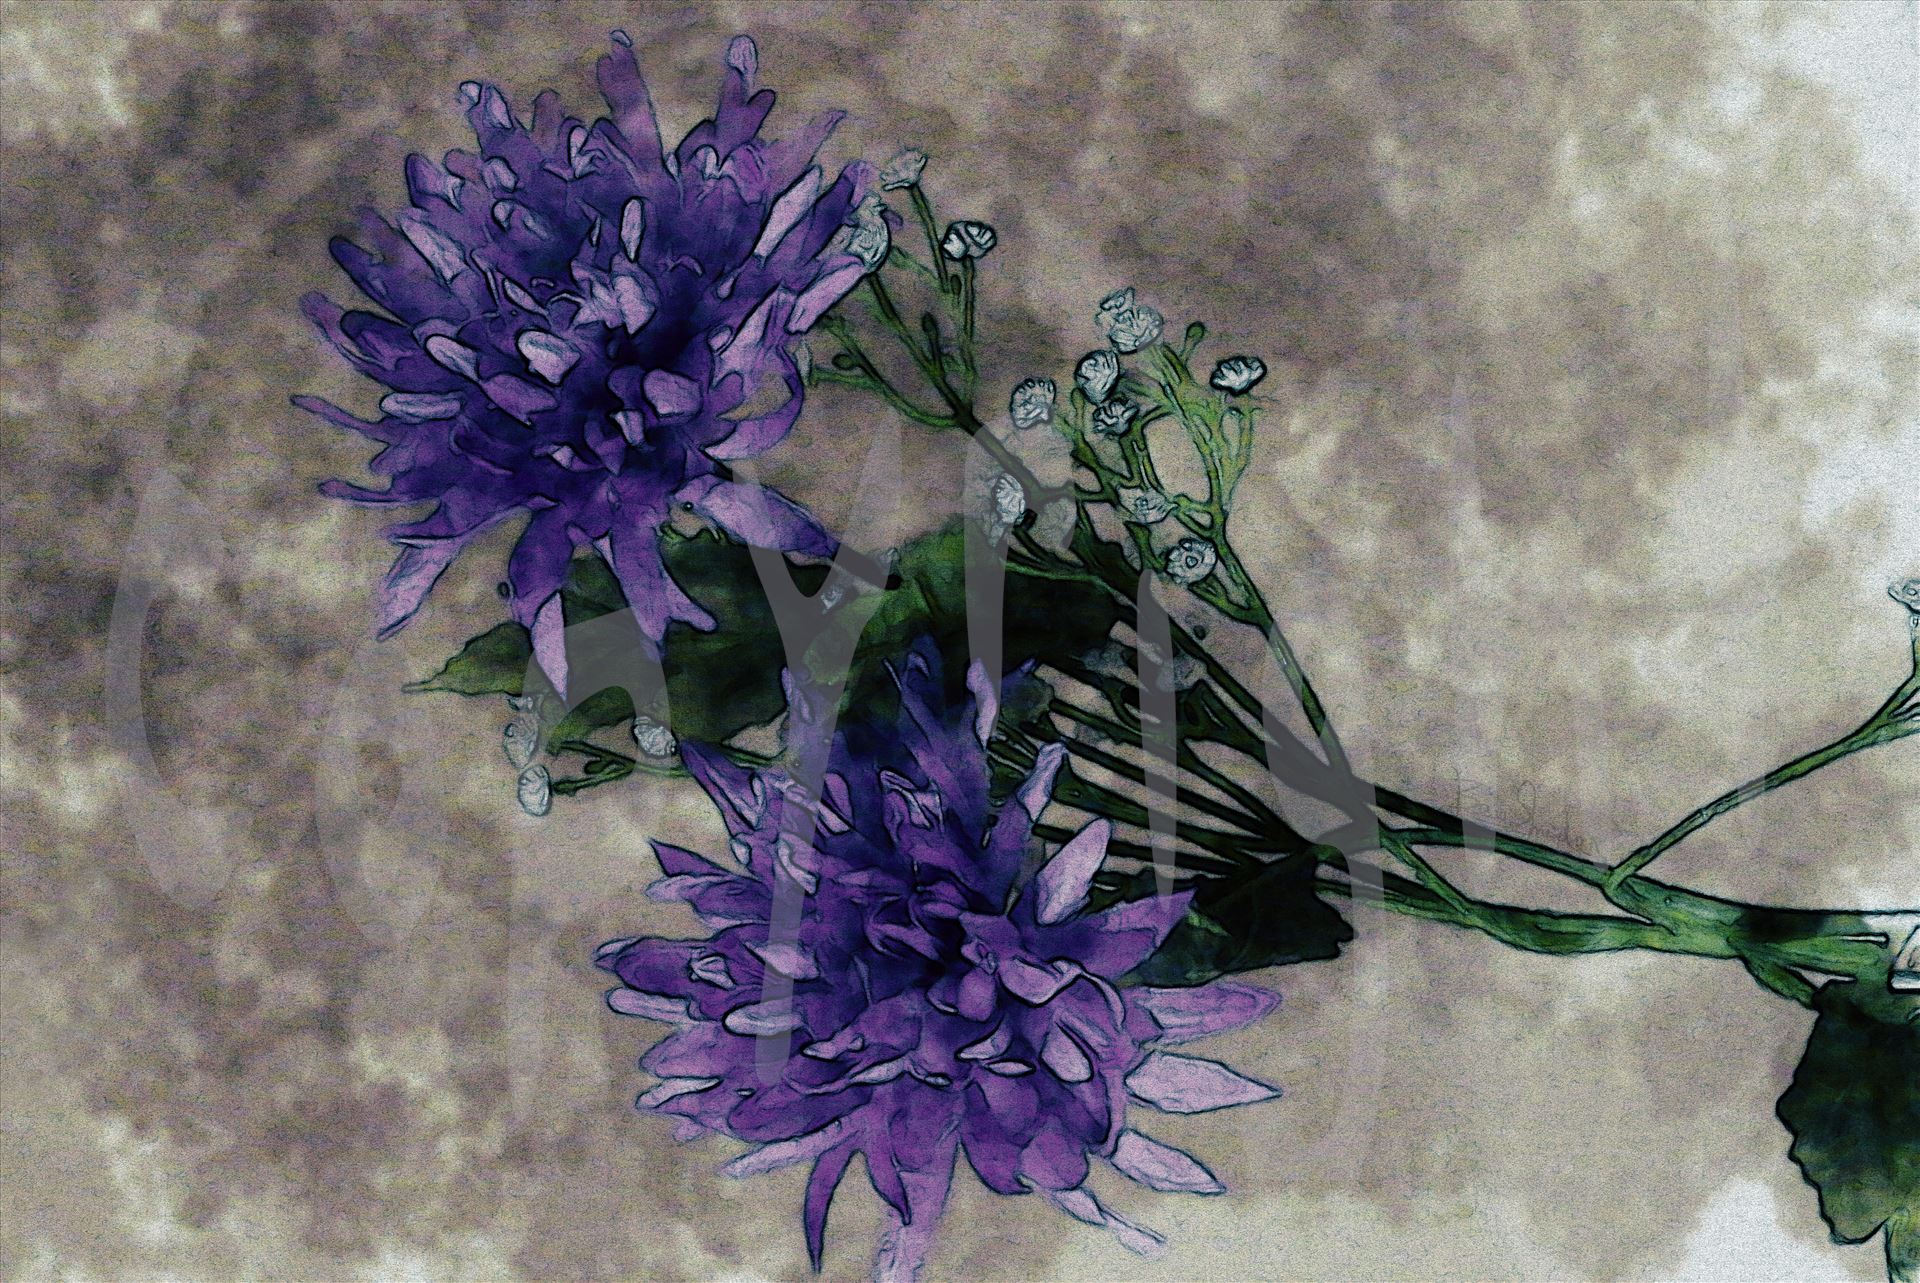 Purple Chrysanthemum 5178 - Purple Chrysanthemums by Snookies Place of Wildlife and Nature